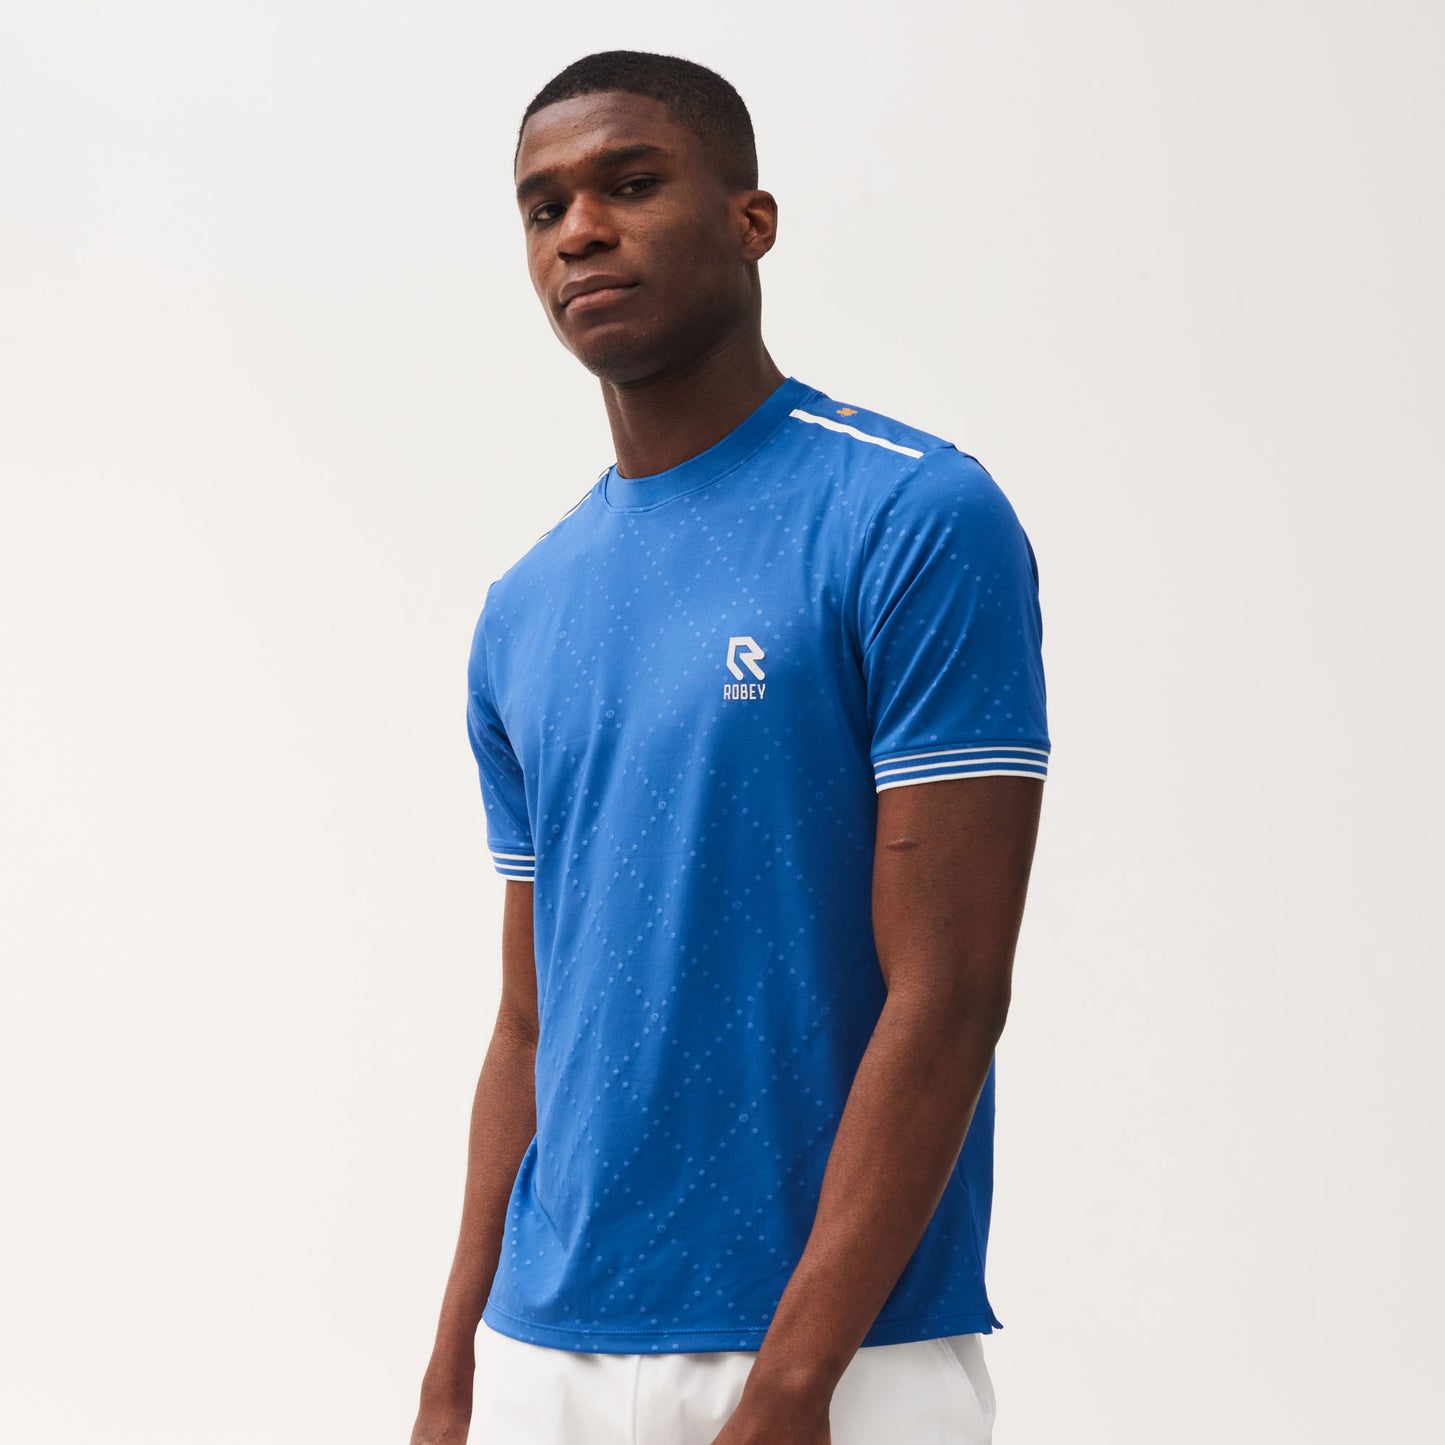 Robey Cross Men's Tennis Shirt Blue (2)